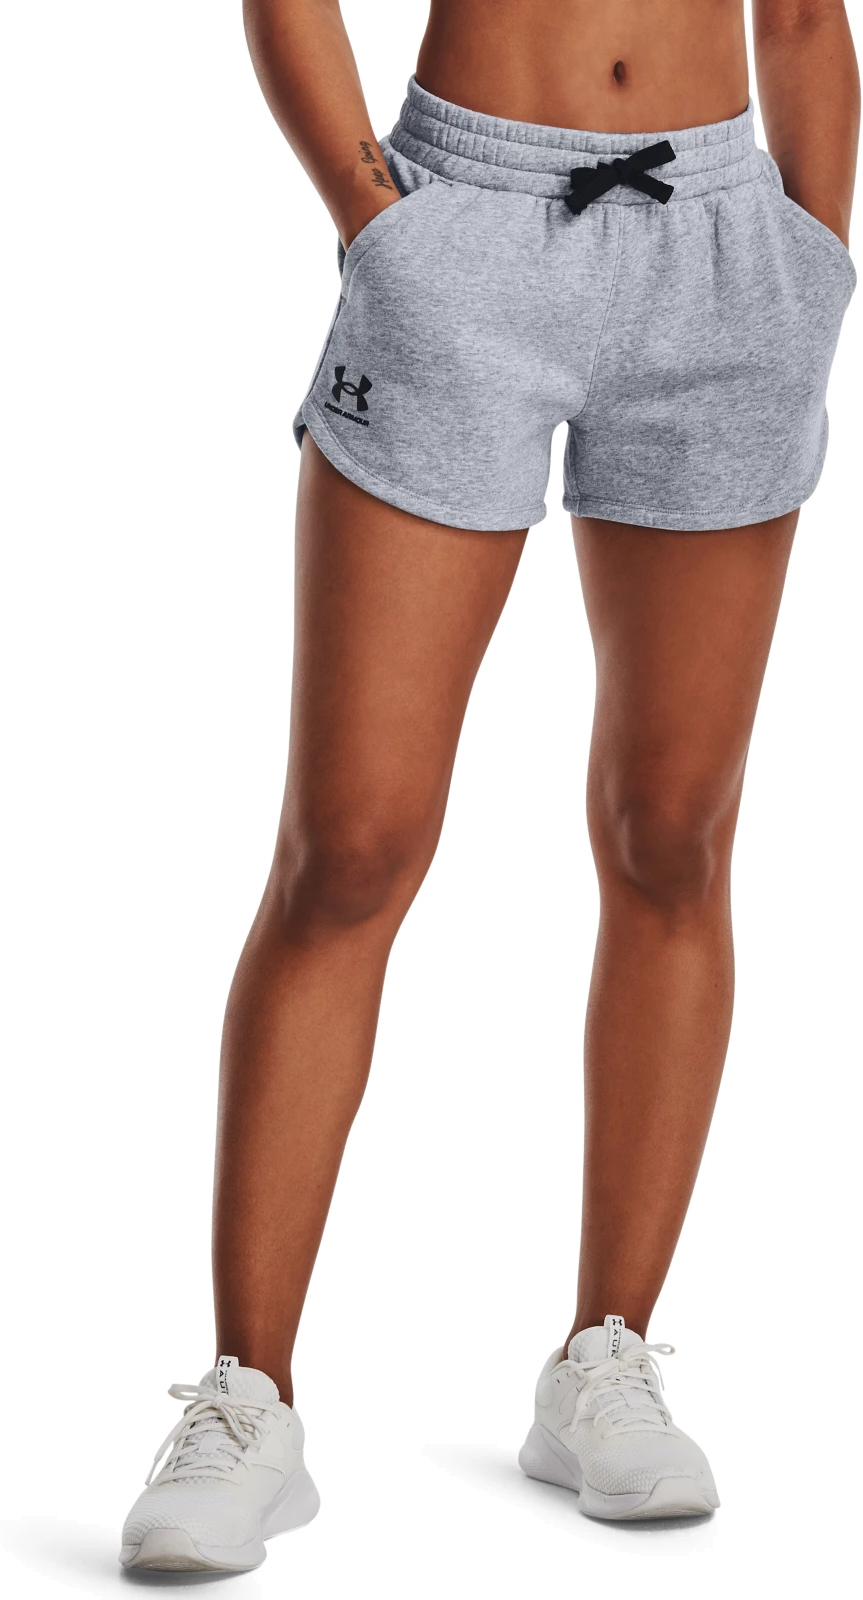 Cпортивные шорты женские Under Armour 1376257-035 серые XL